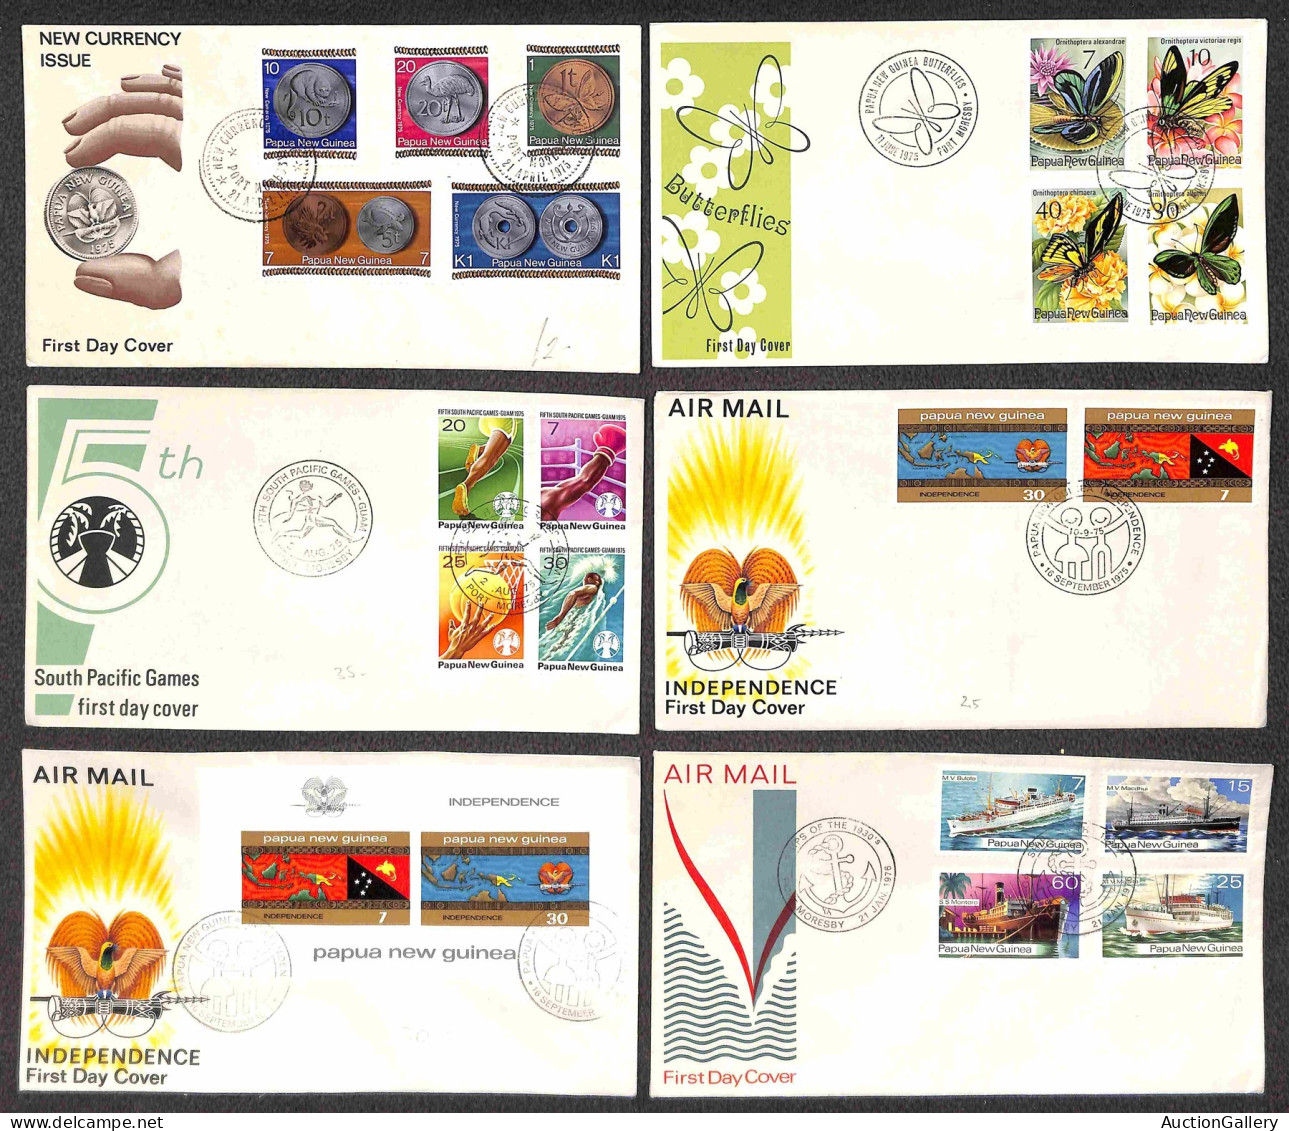 Lotti&Collezioni - Europa&Oltremare - PAPUA NUOVA GUINEA - 1965/1987 - Collezione di 150 FDC del periodo - pochissime ma